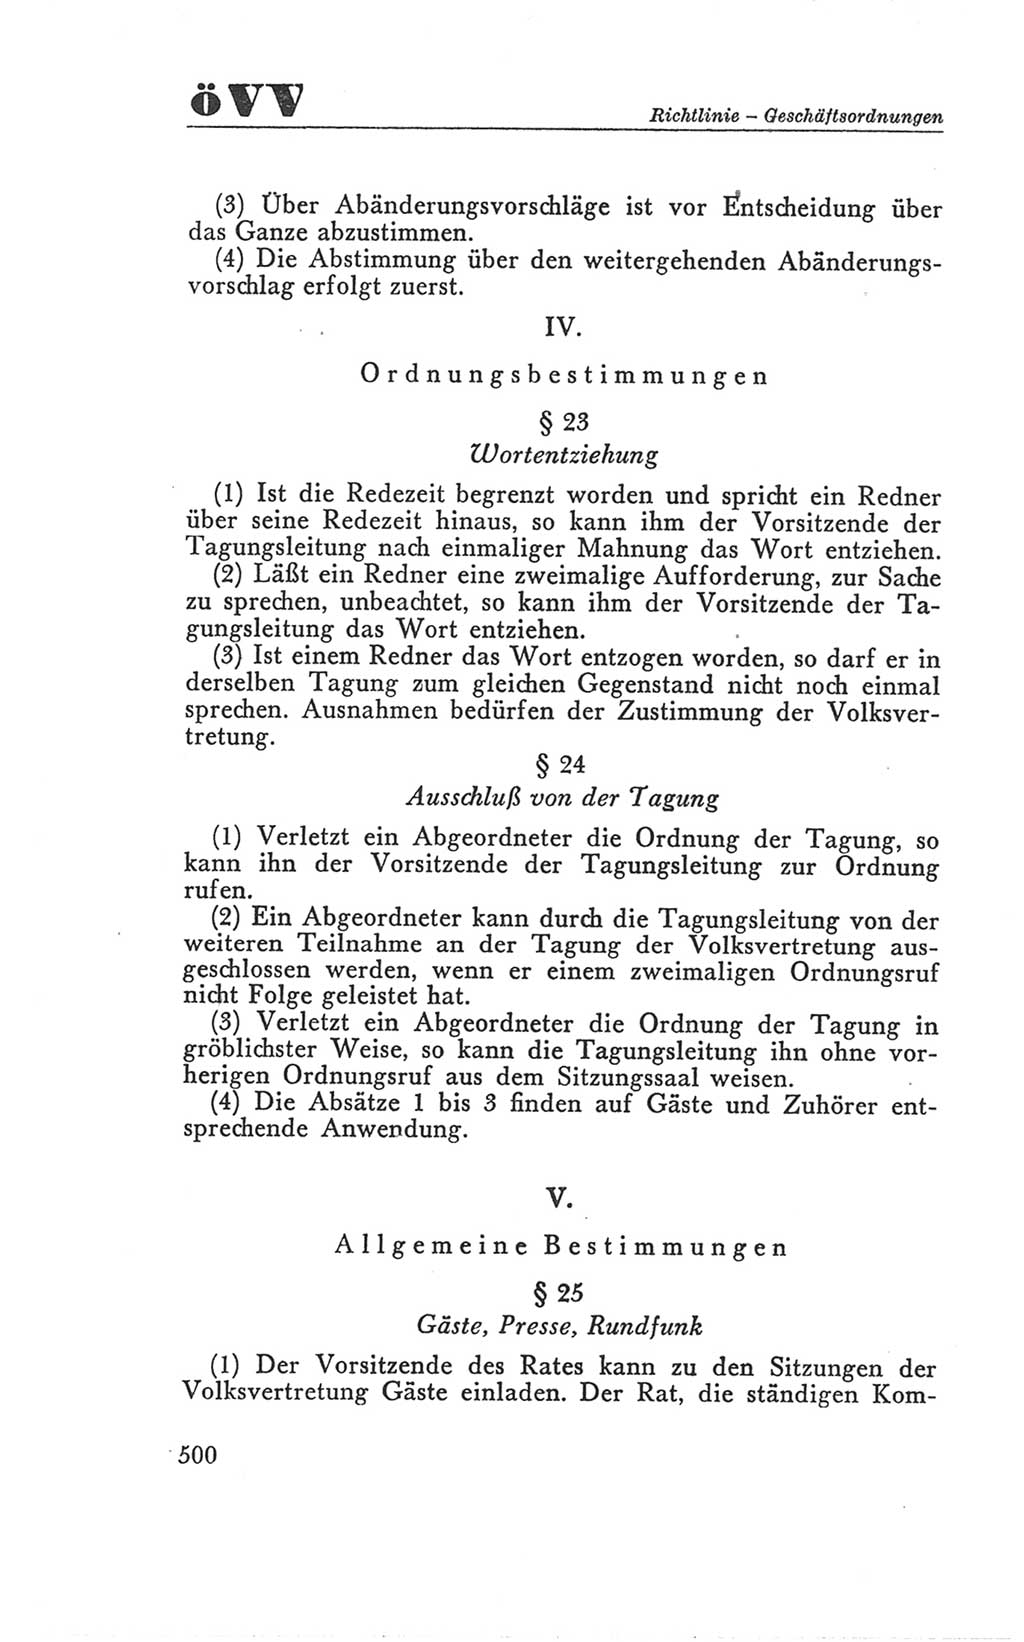 Handbuch der Volkskammer (VK) der Deutschen Demokratischen Republik (DDR), 3. Wahlperiode 1958-1963, Seite 500 (Hdb. VK. DDR 3. WP. 1958-1963, S. 500)